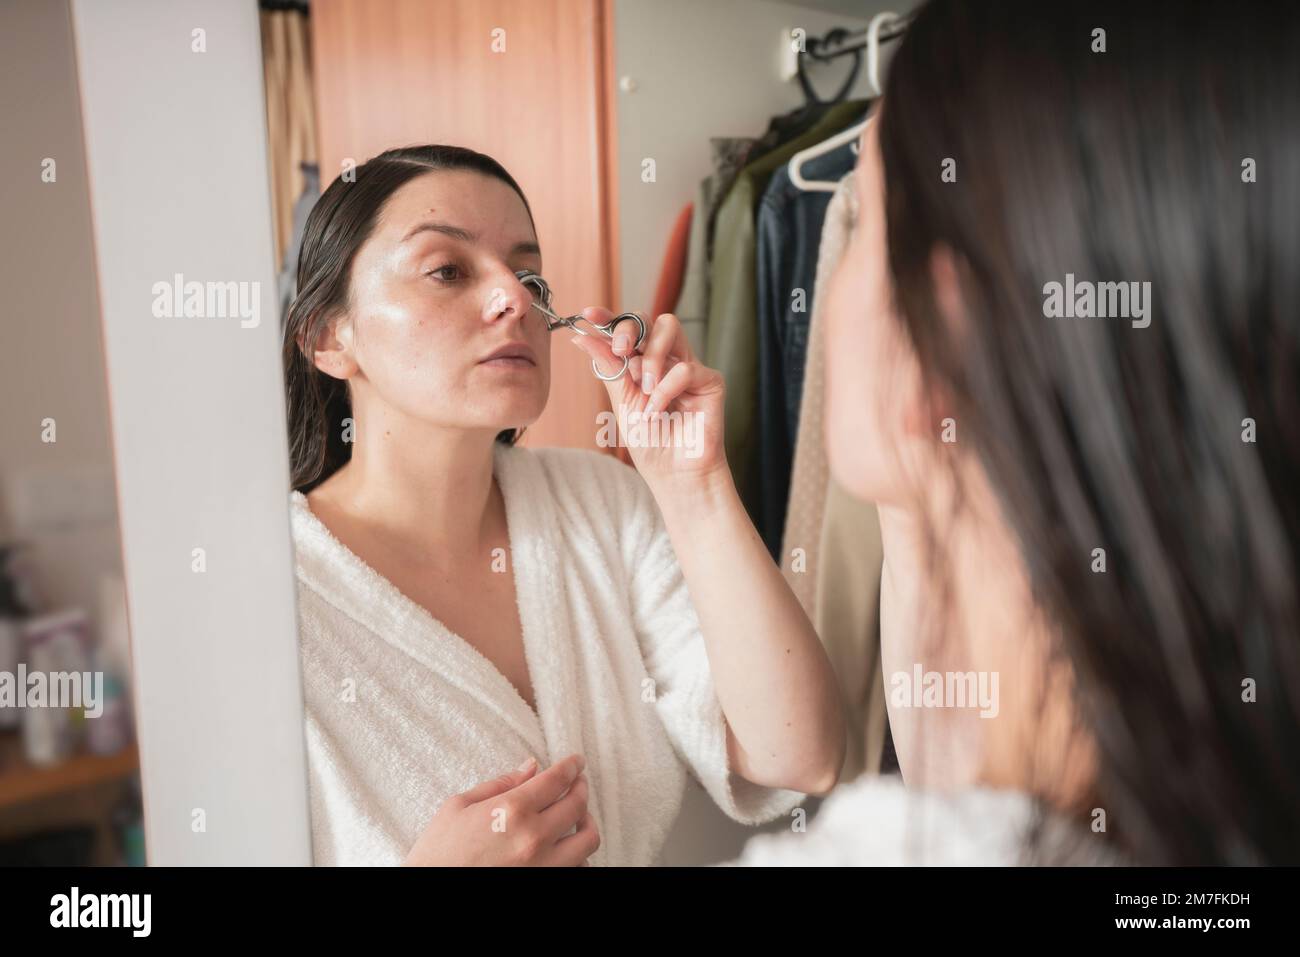 Wunderschöne lateinamerikanische Frau in einem weißen Bademantel, die ihre Augenbrauen vor dem Spiegel an ihrer Schranktür in ihrem Schlafzimmer kämmt Stockfoto